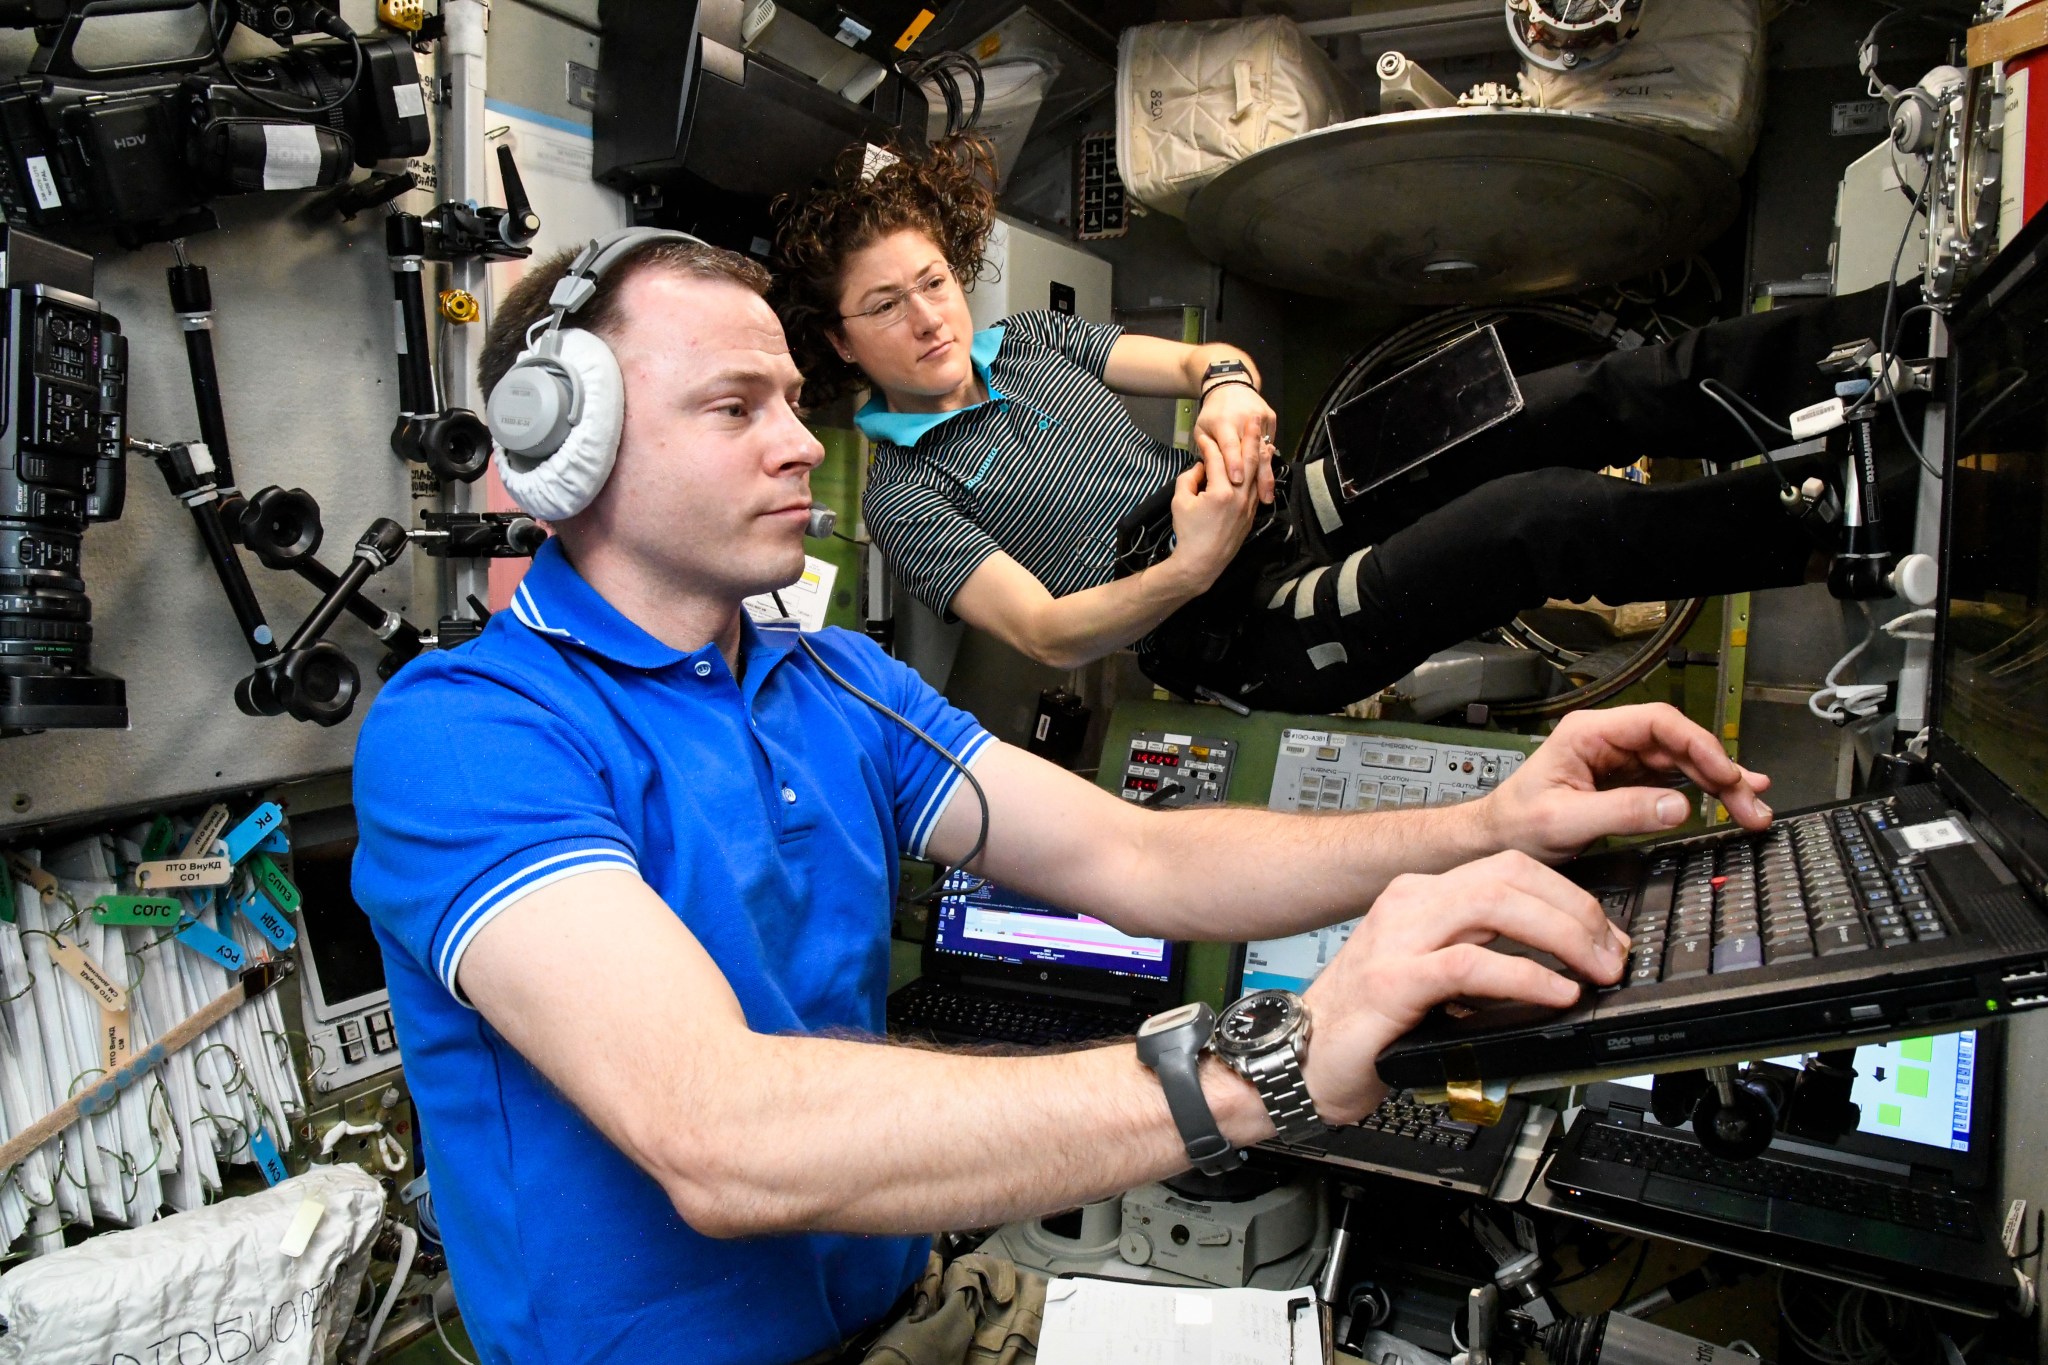 NASA astroanauts Christina Koch and Nick Hague